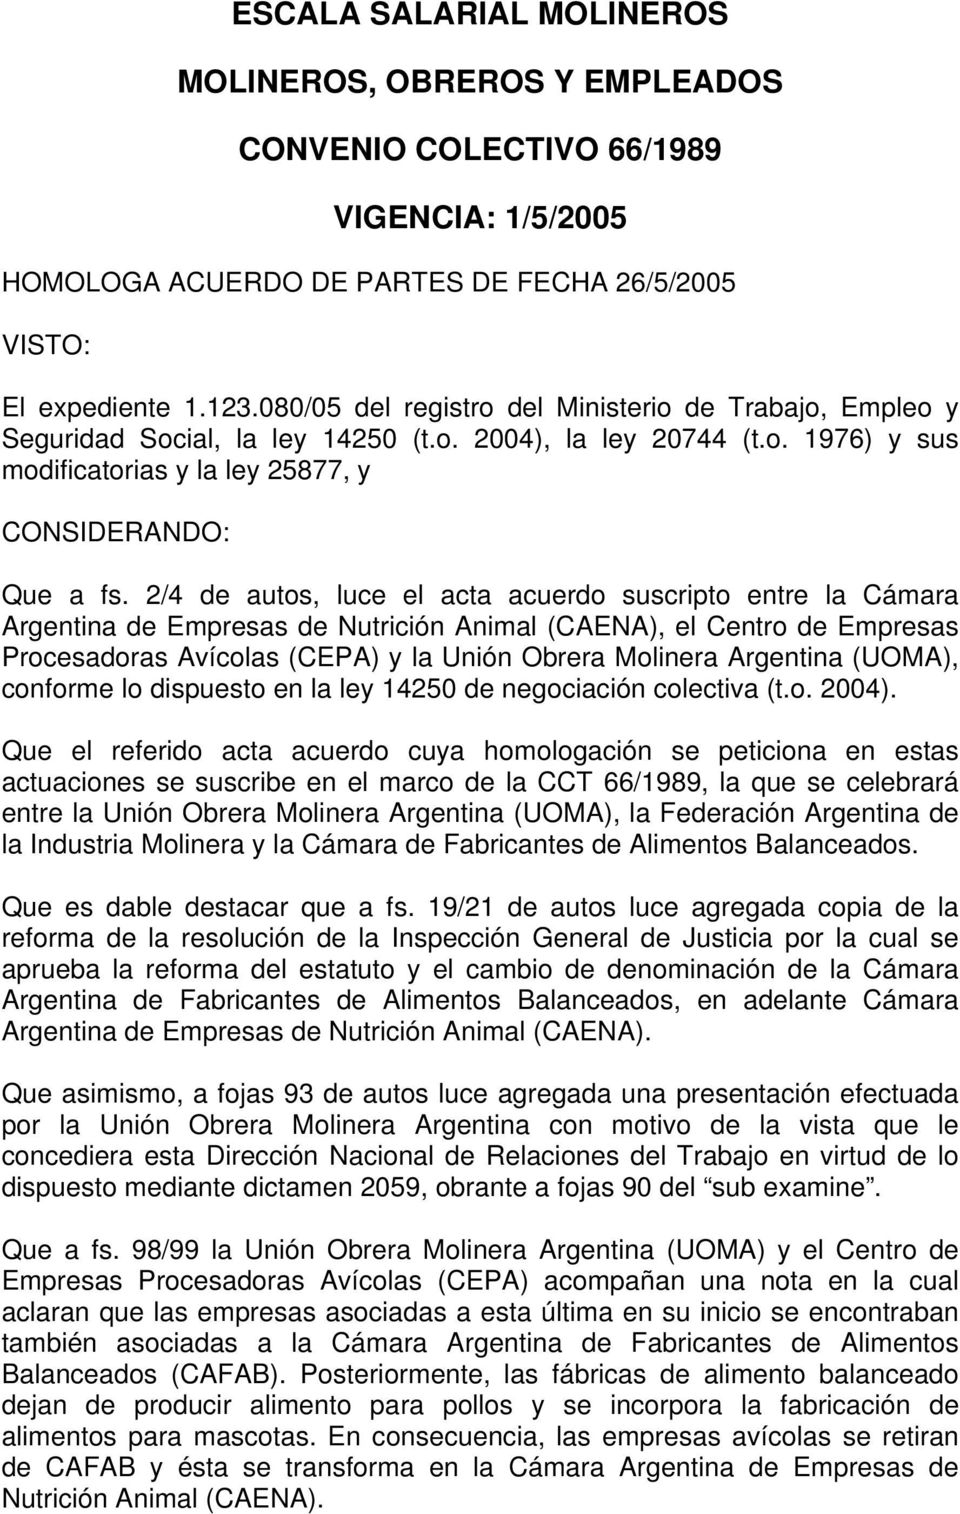 2/4 de autos, luce el acta acuerdo suscripto entre la Cámara Argentina de Empresas de Nutrición Animal (CAENA), el Centro de Empresas Procesadoras Avícolas (CEPA) y la Unión Obrera Molinera Argentina